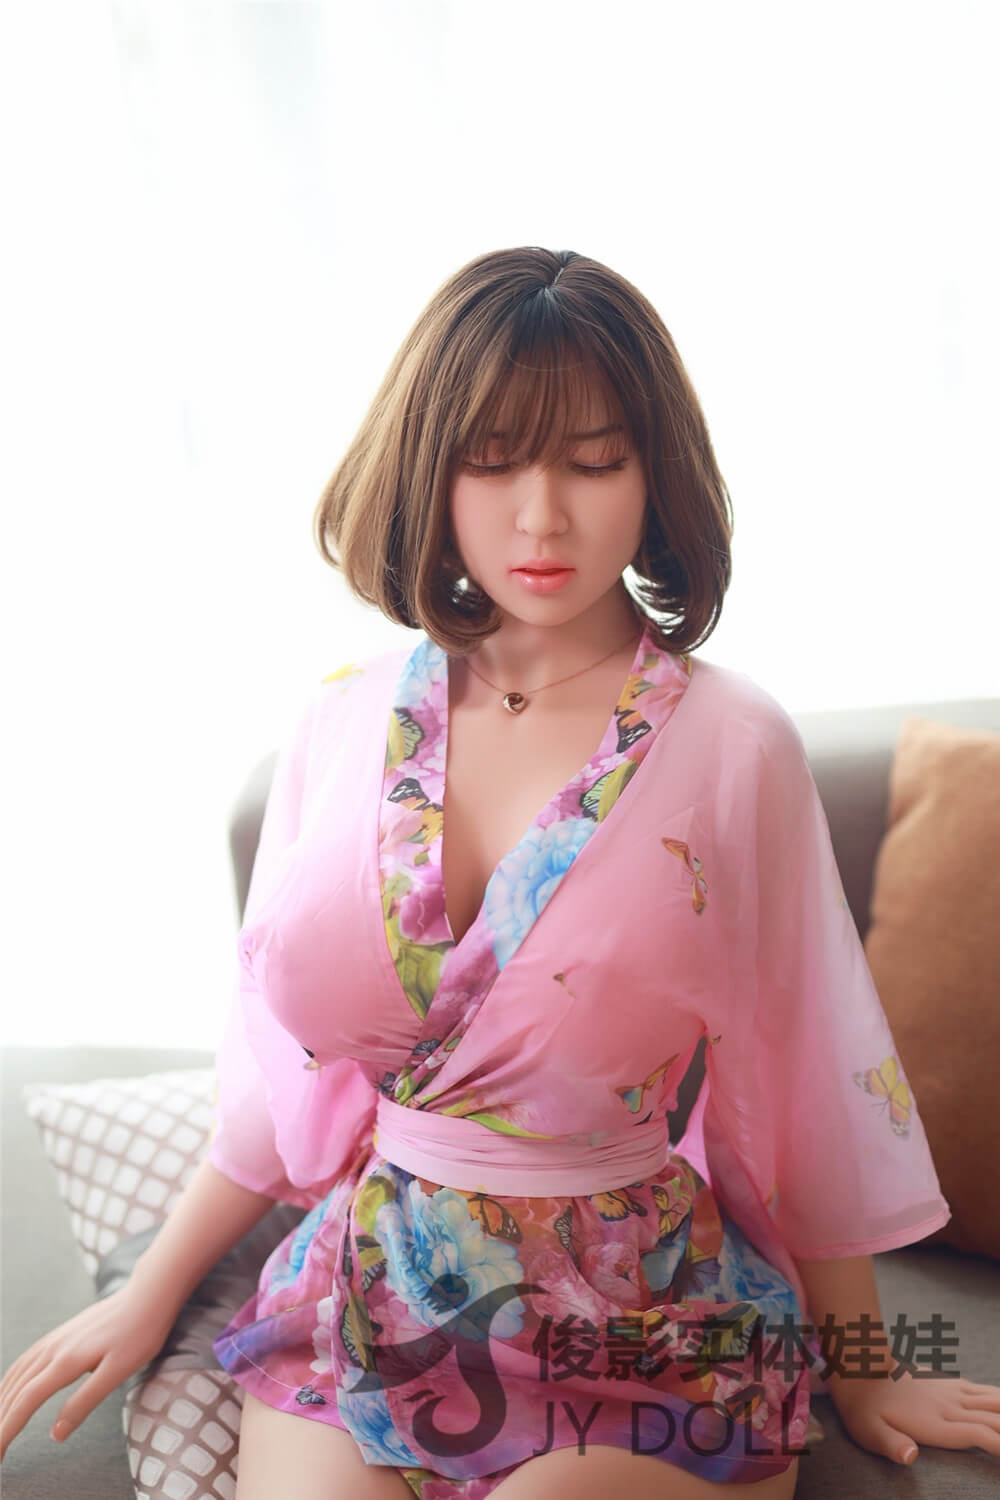 JY Doll 165 cm TPE - Eyes Closed Mia | Sex Dolls SG